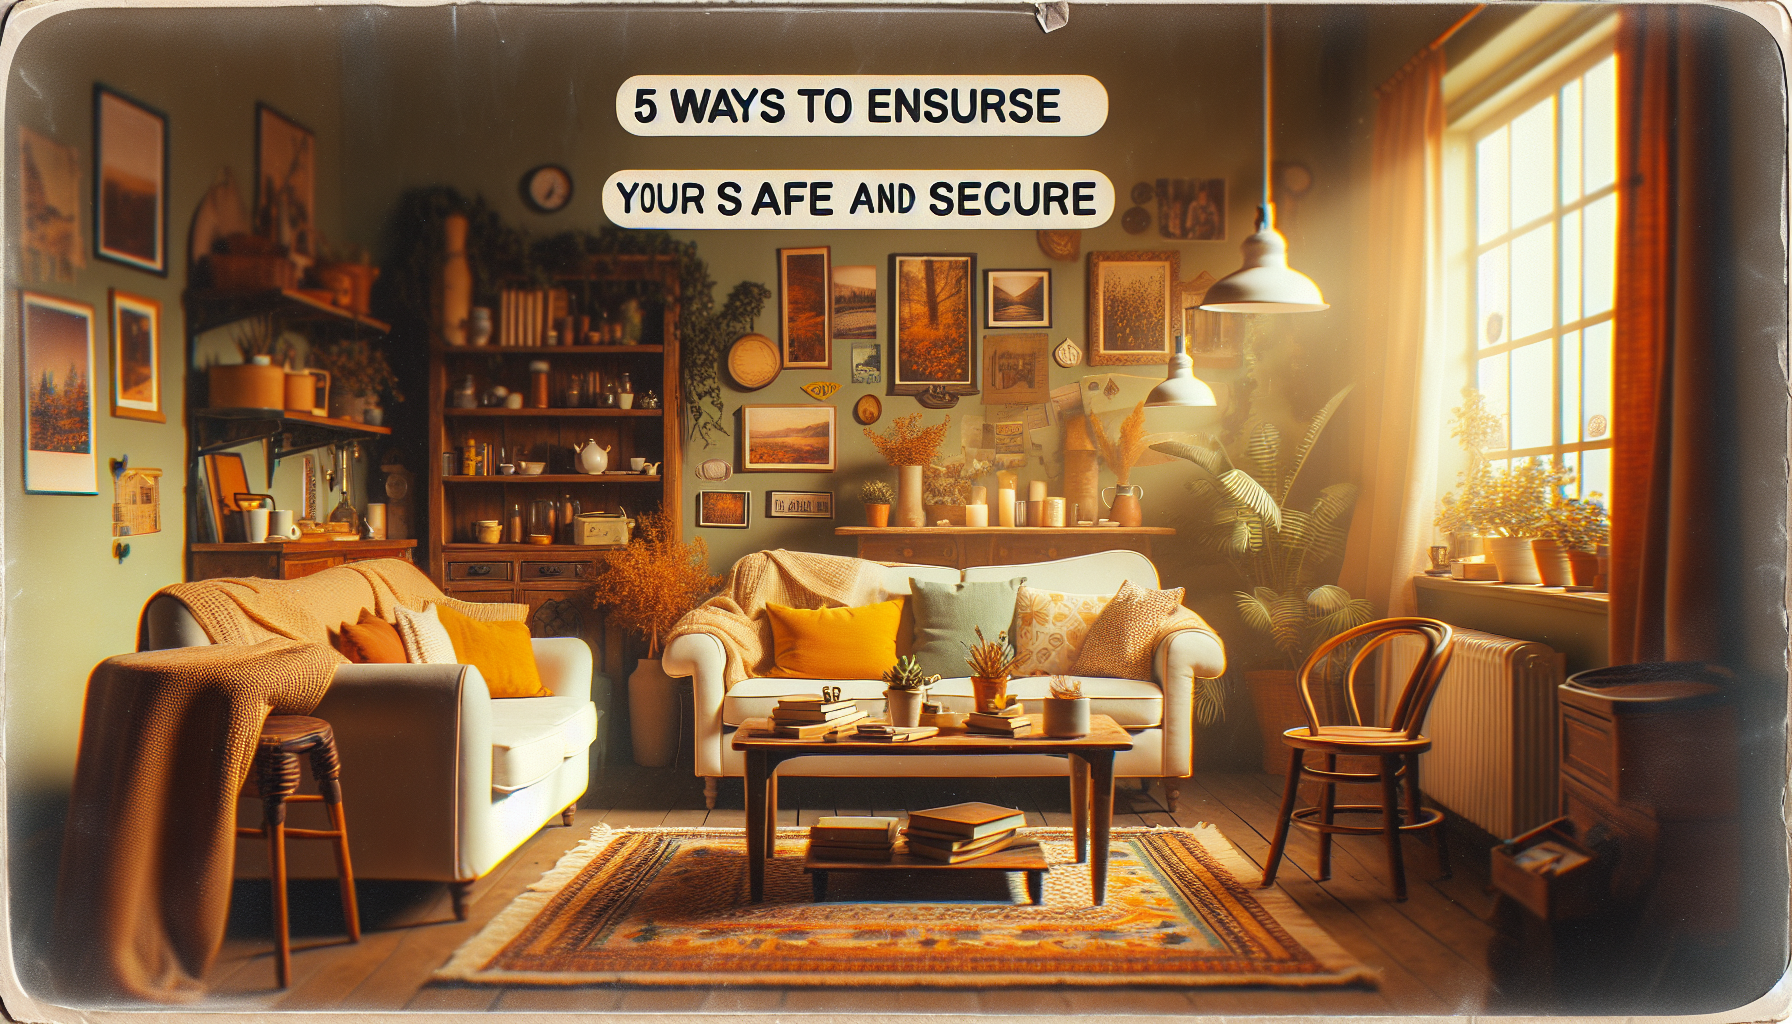 découvrez nos conseils pour garantir la sécurité de votre logement sur airbnb et assurer la tranquillité de vos invités.